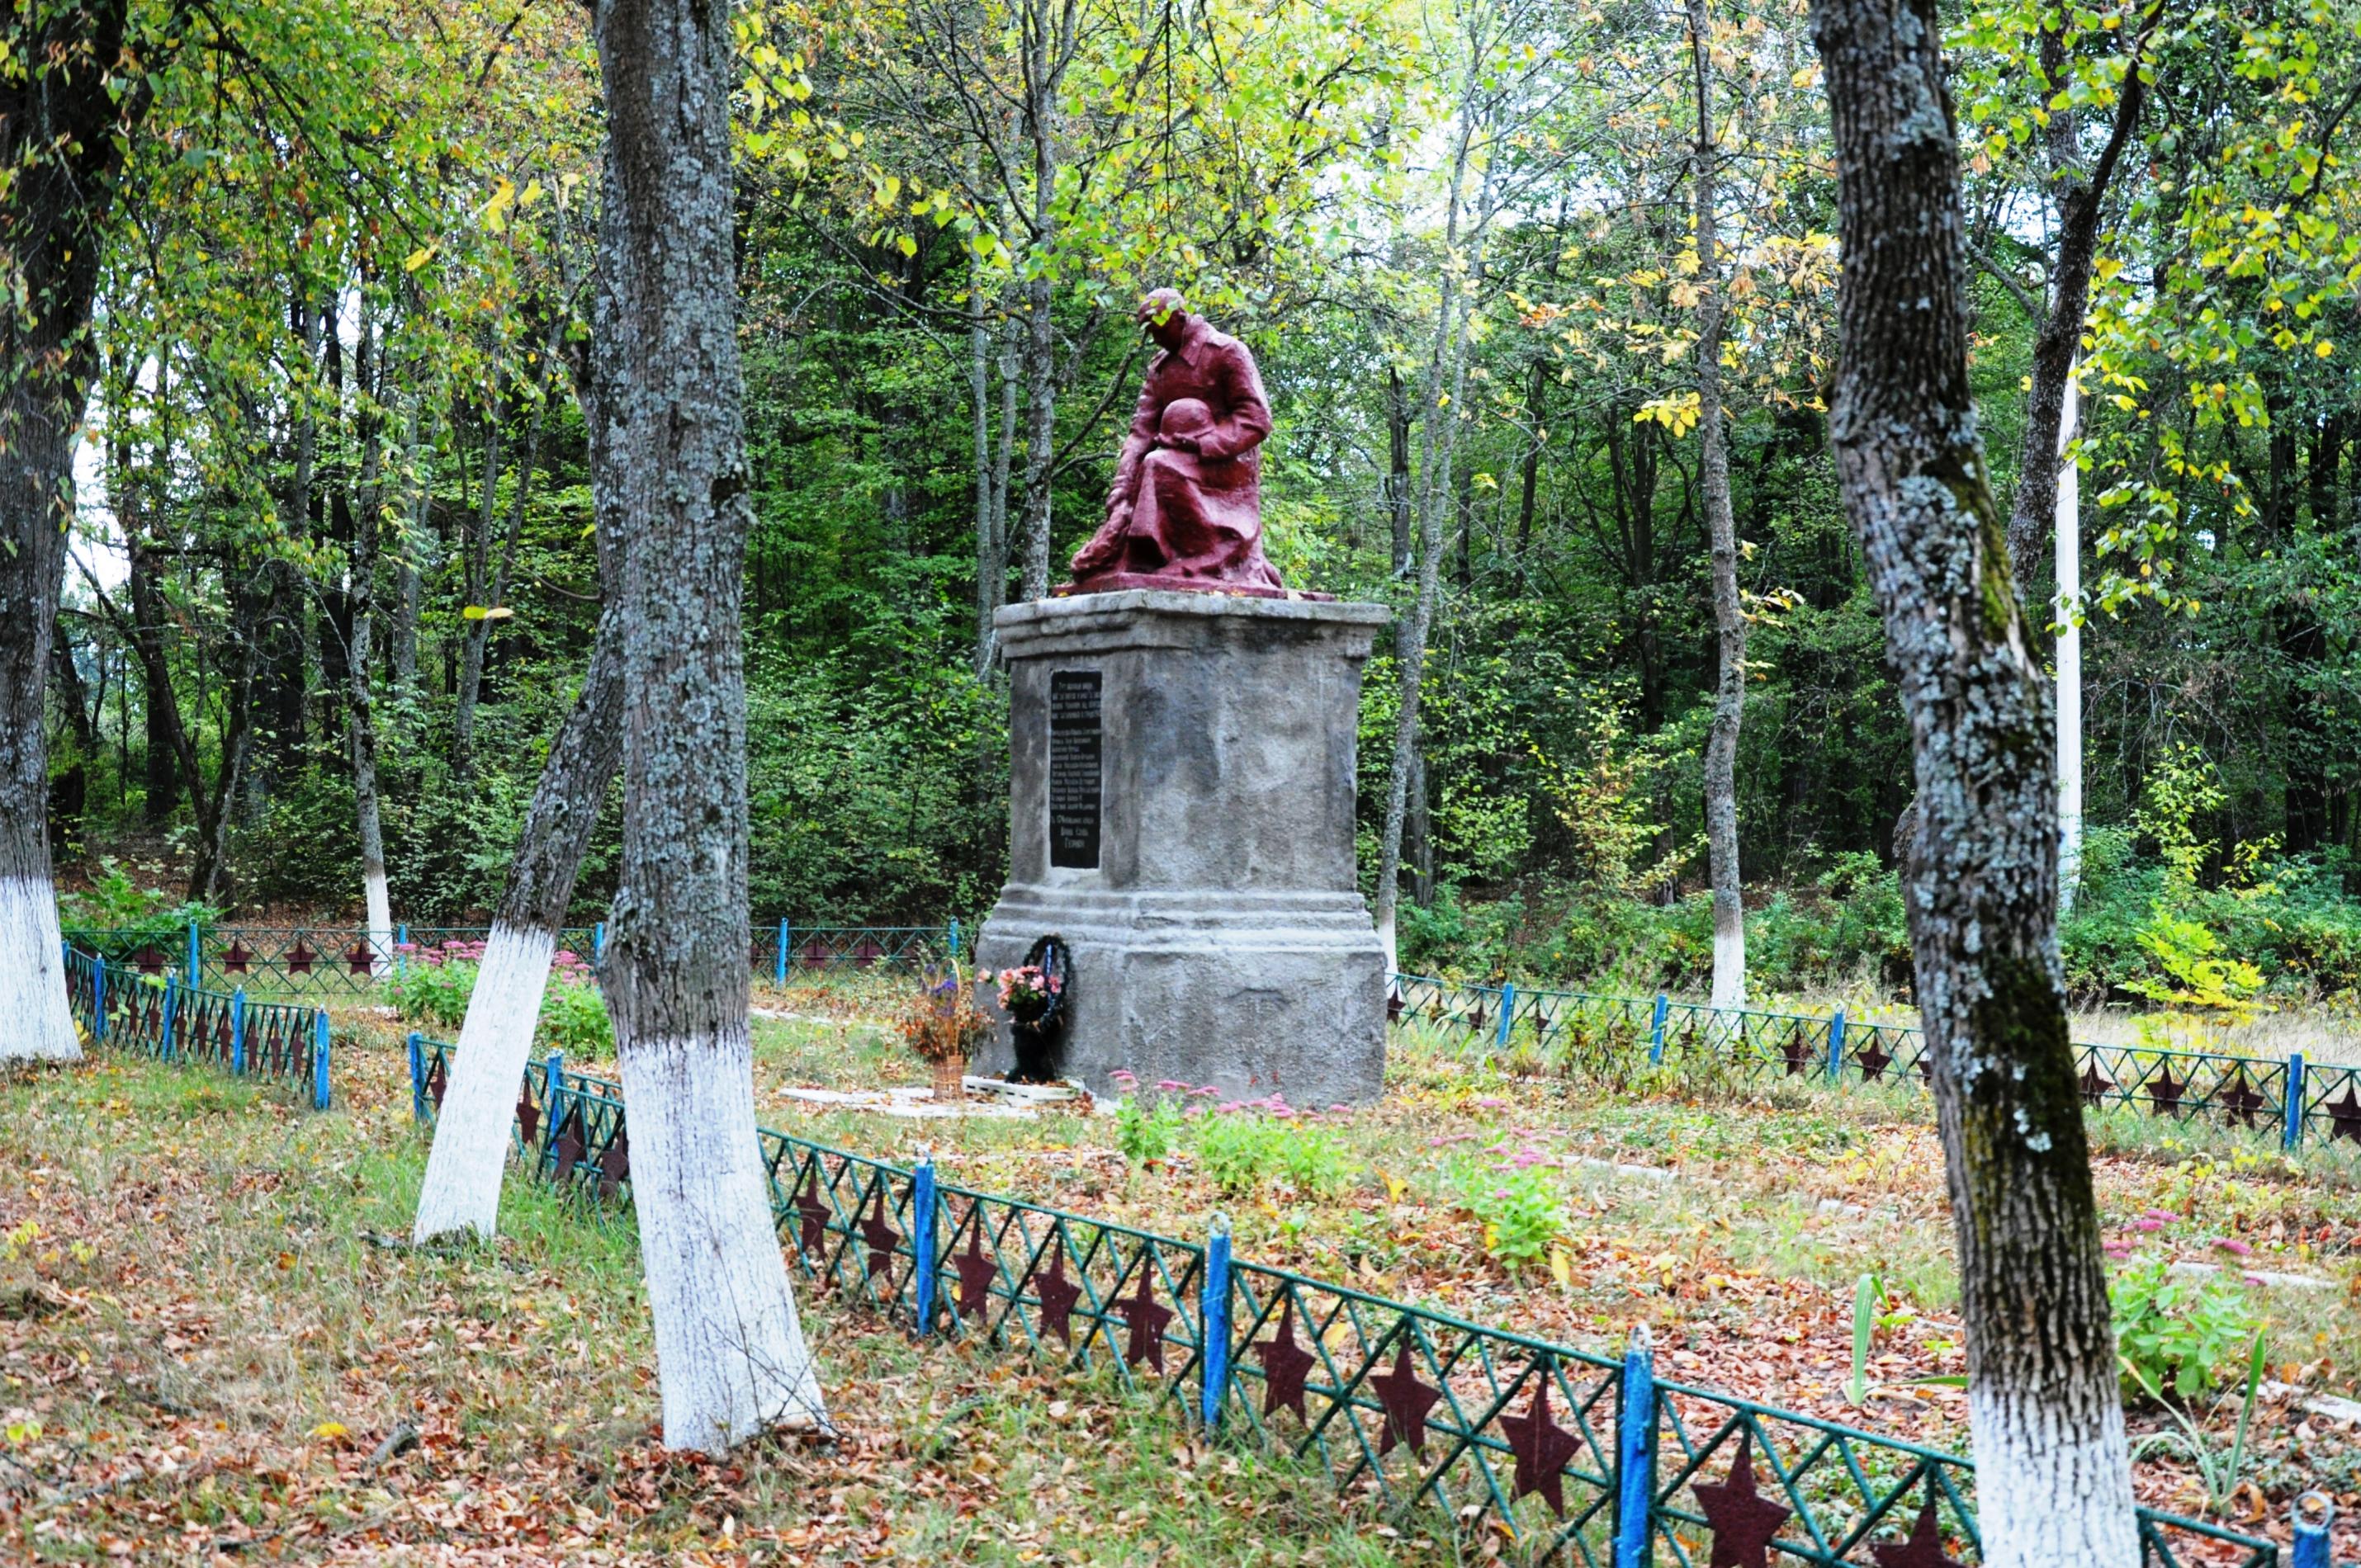 Братская могила в центральном парке с. Ушомир Коростенского района